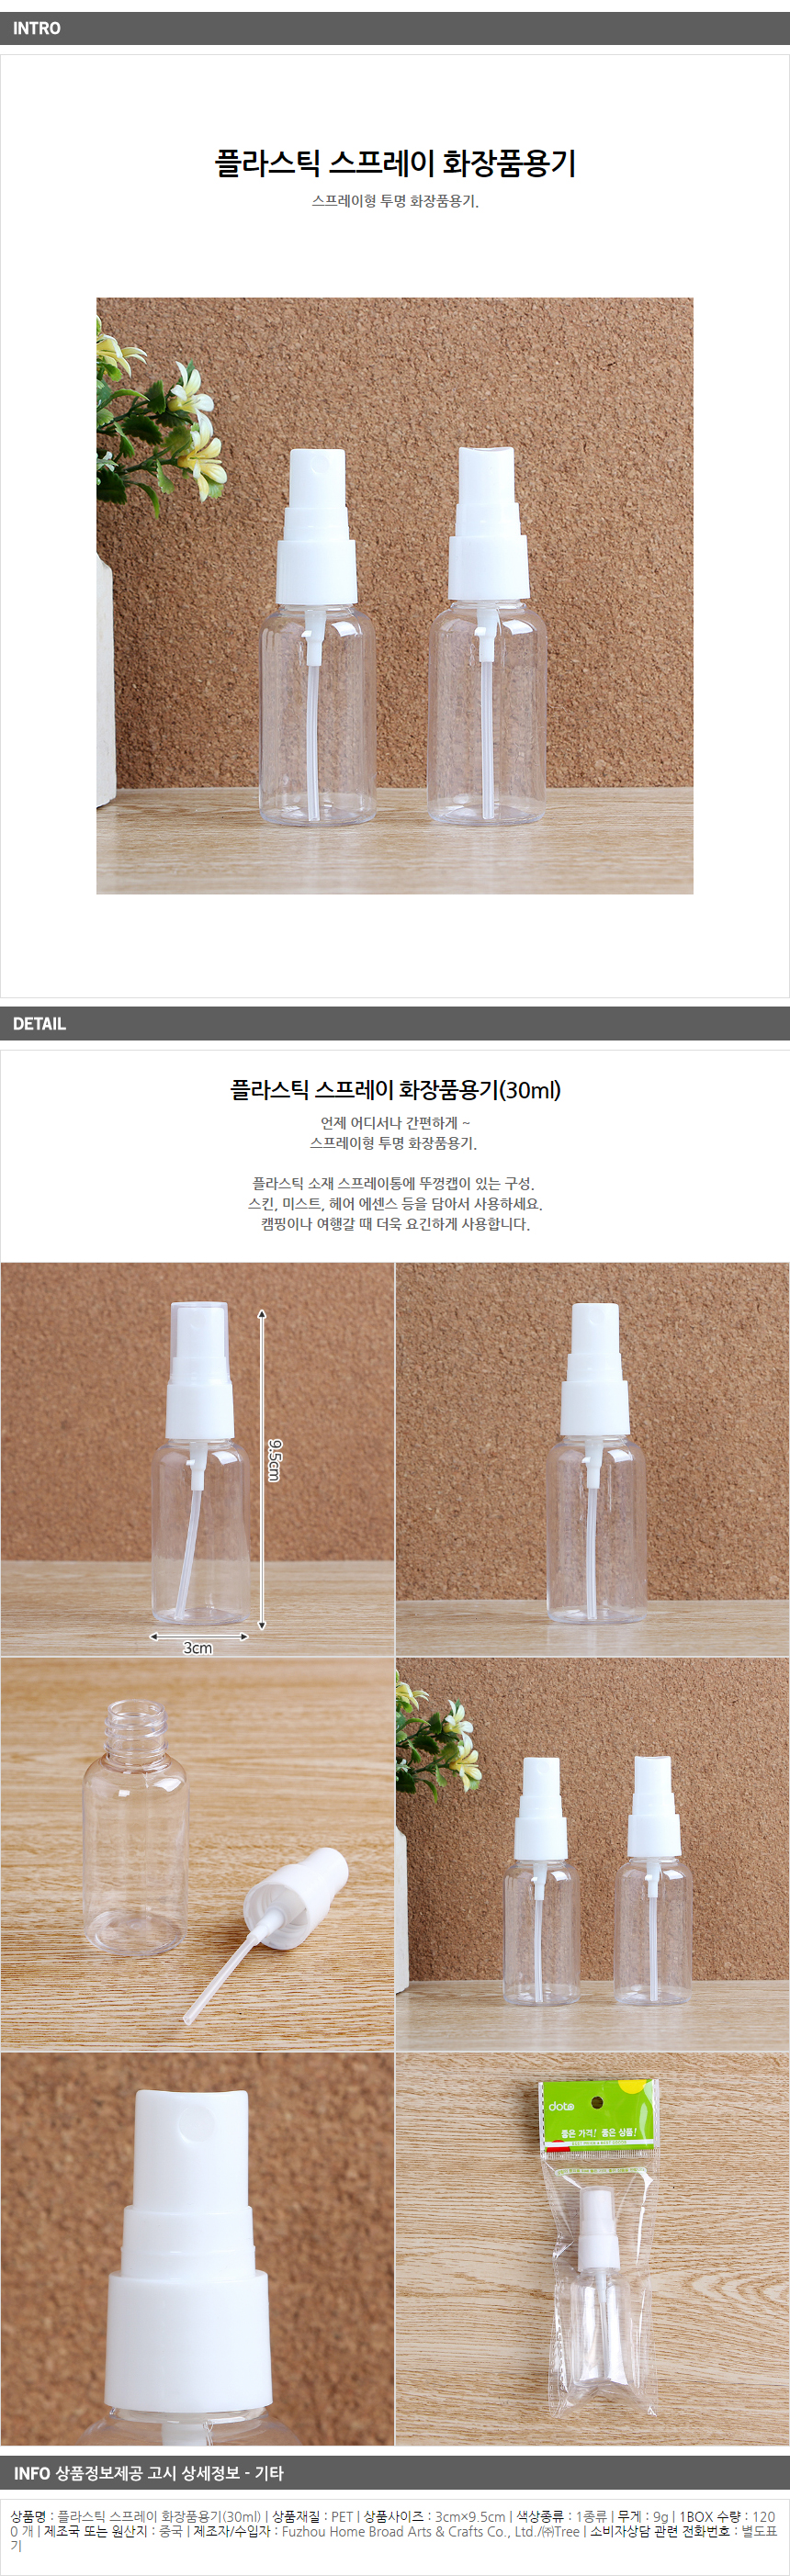 플라스틱 스프레이 화장품용기 30ml/여행용 공병